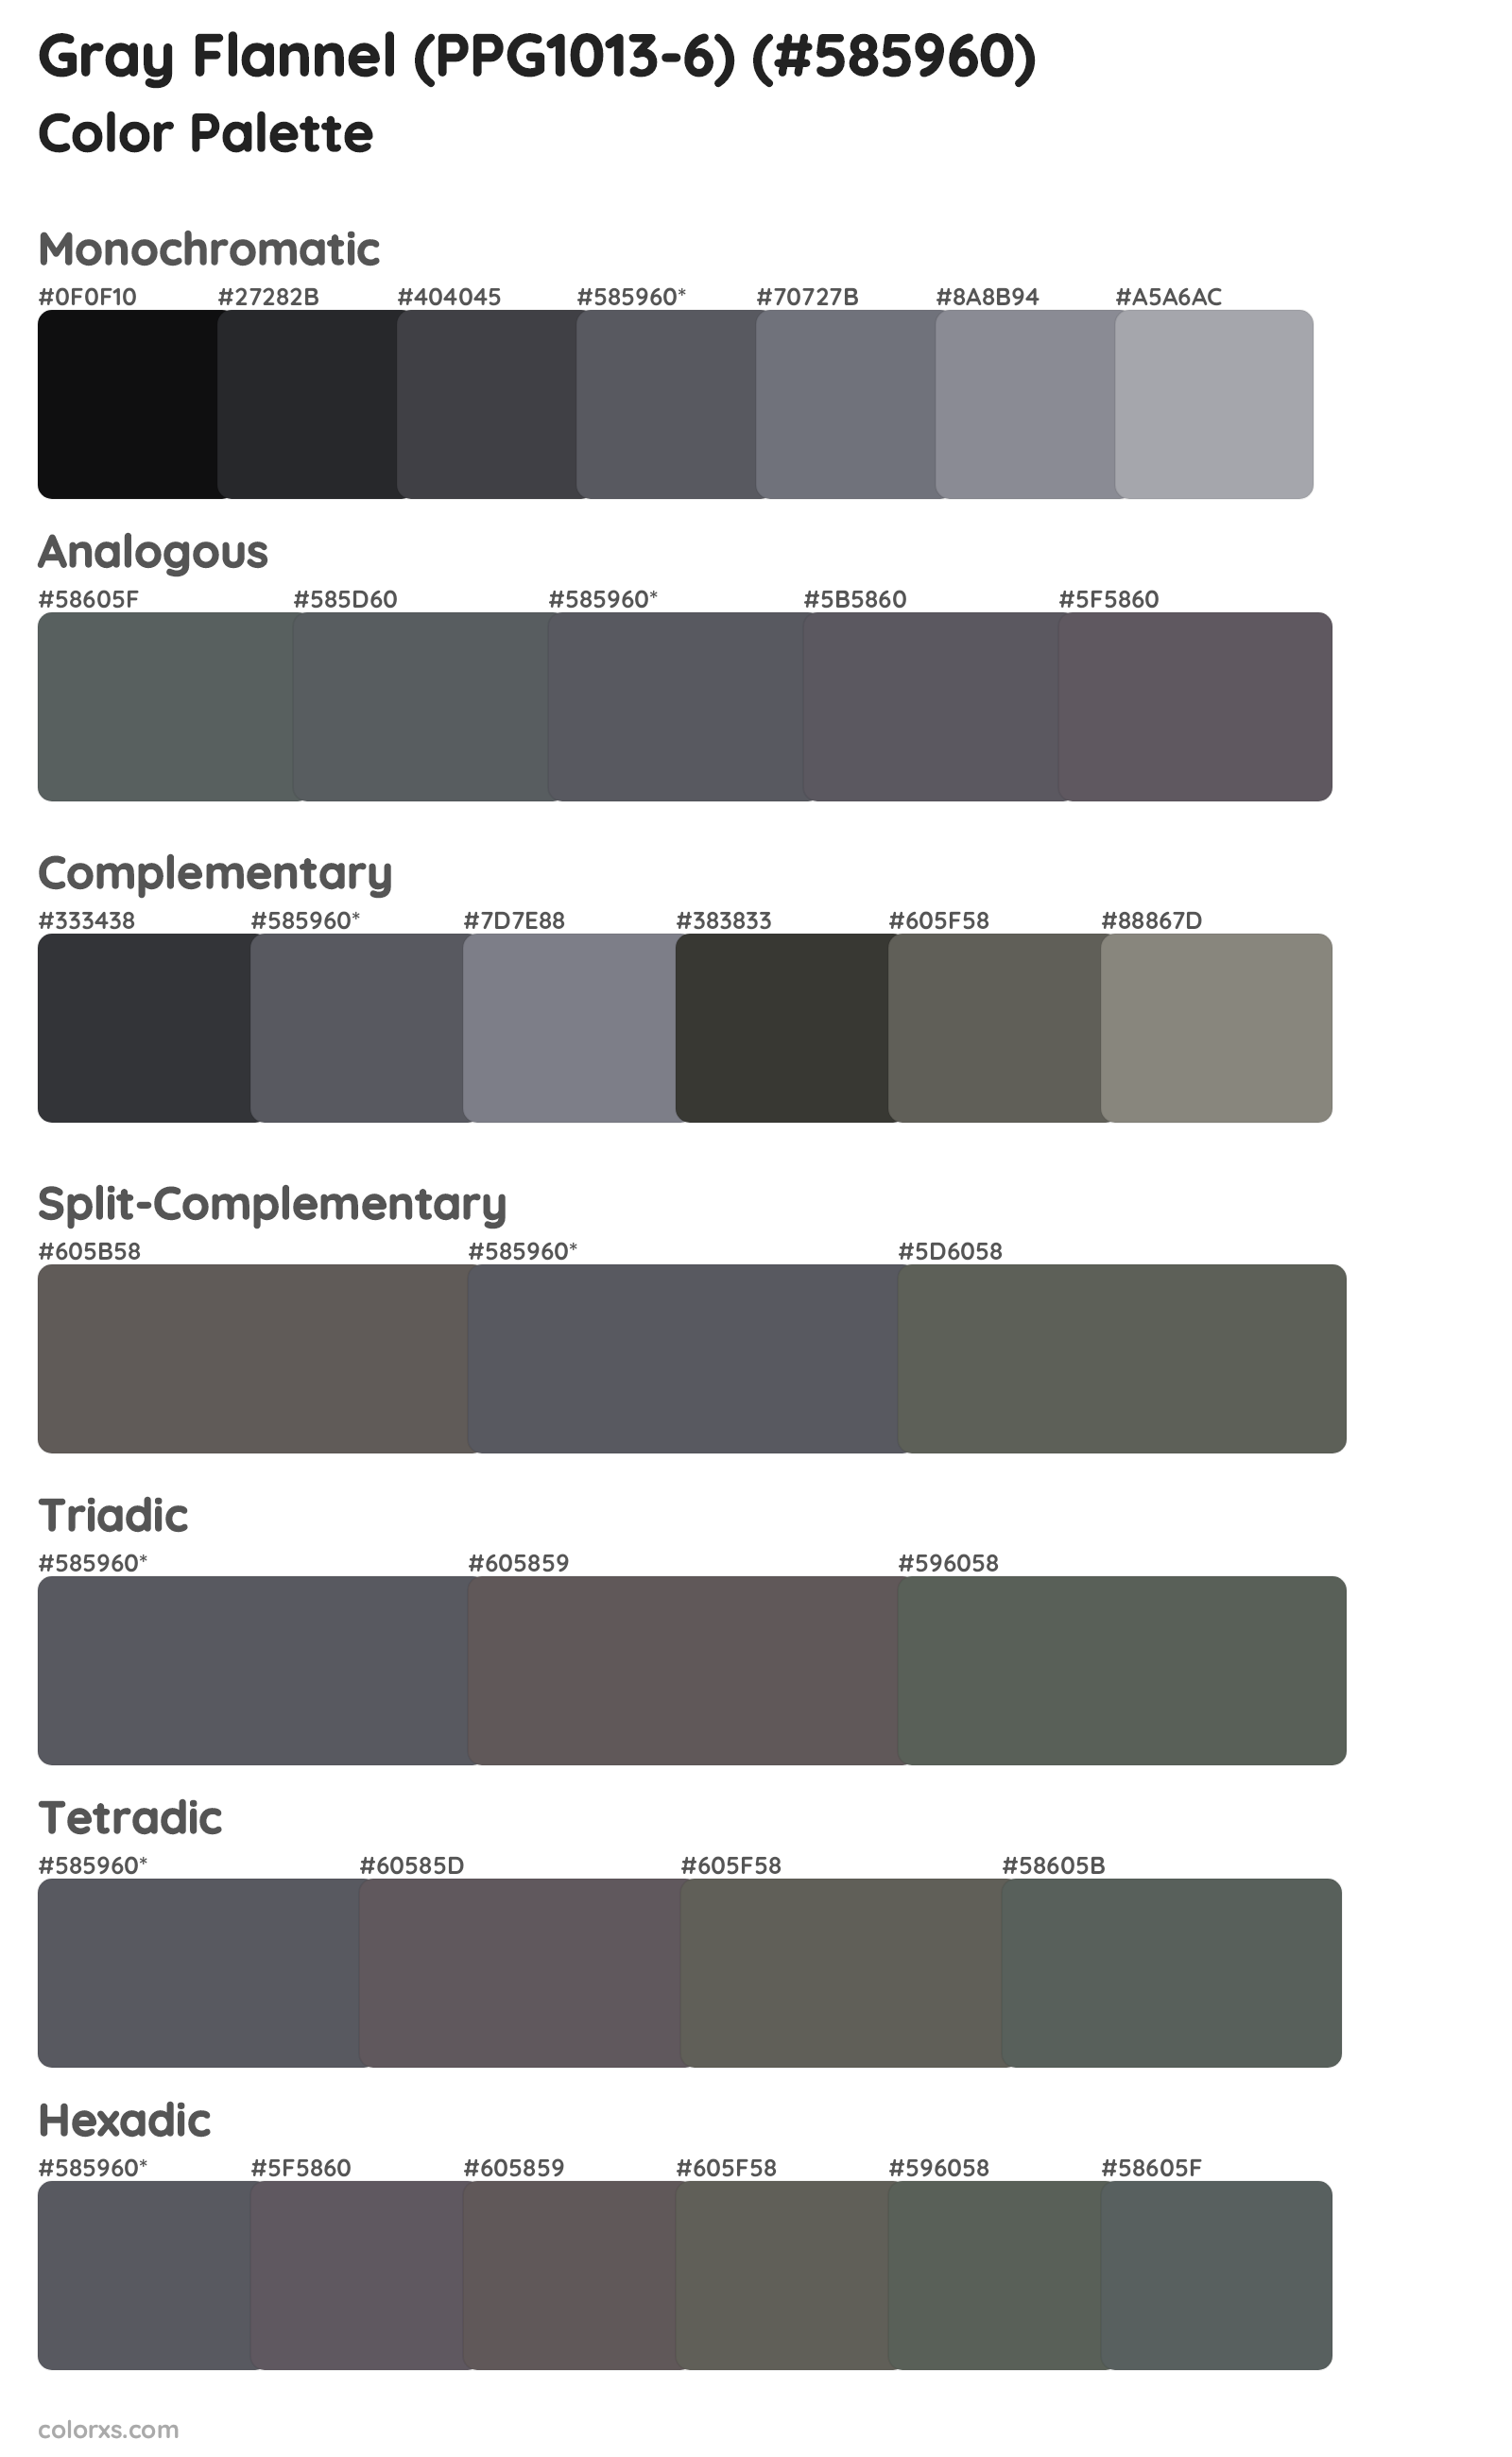 Gray Flannel (PPG1013-6) Color Scheme Palettes